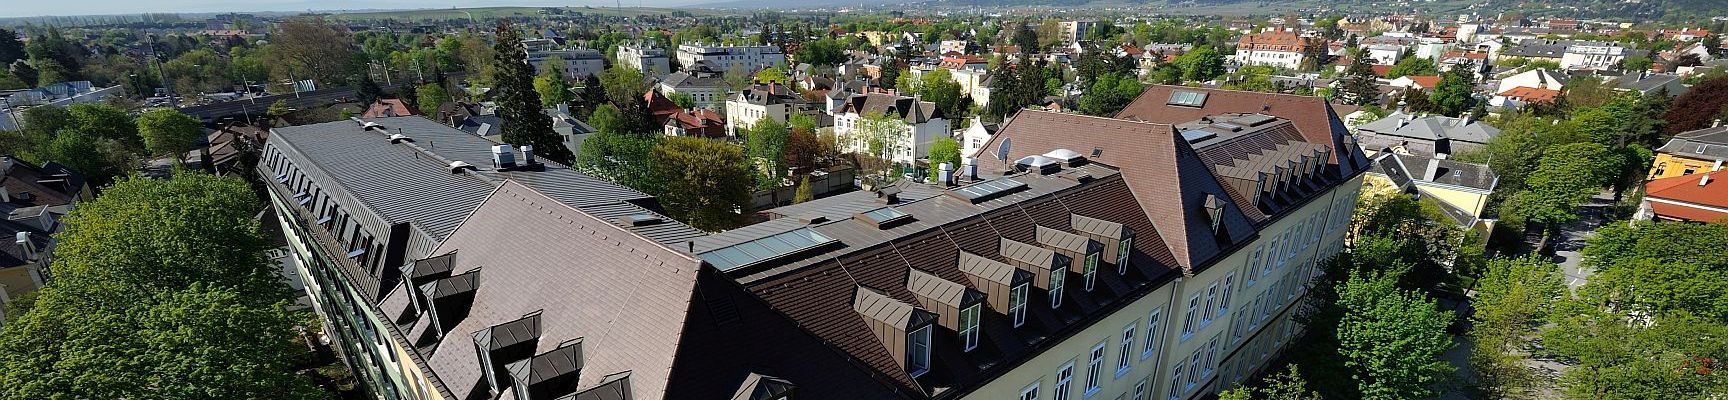 Projekte zur Klimameile der Stadt Baden